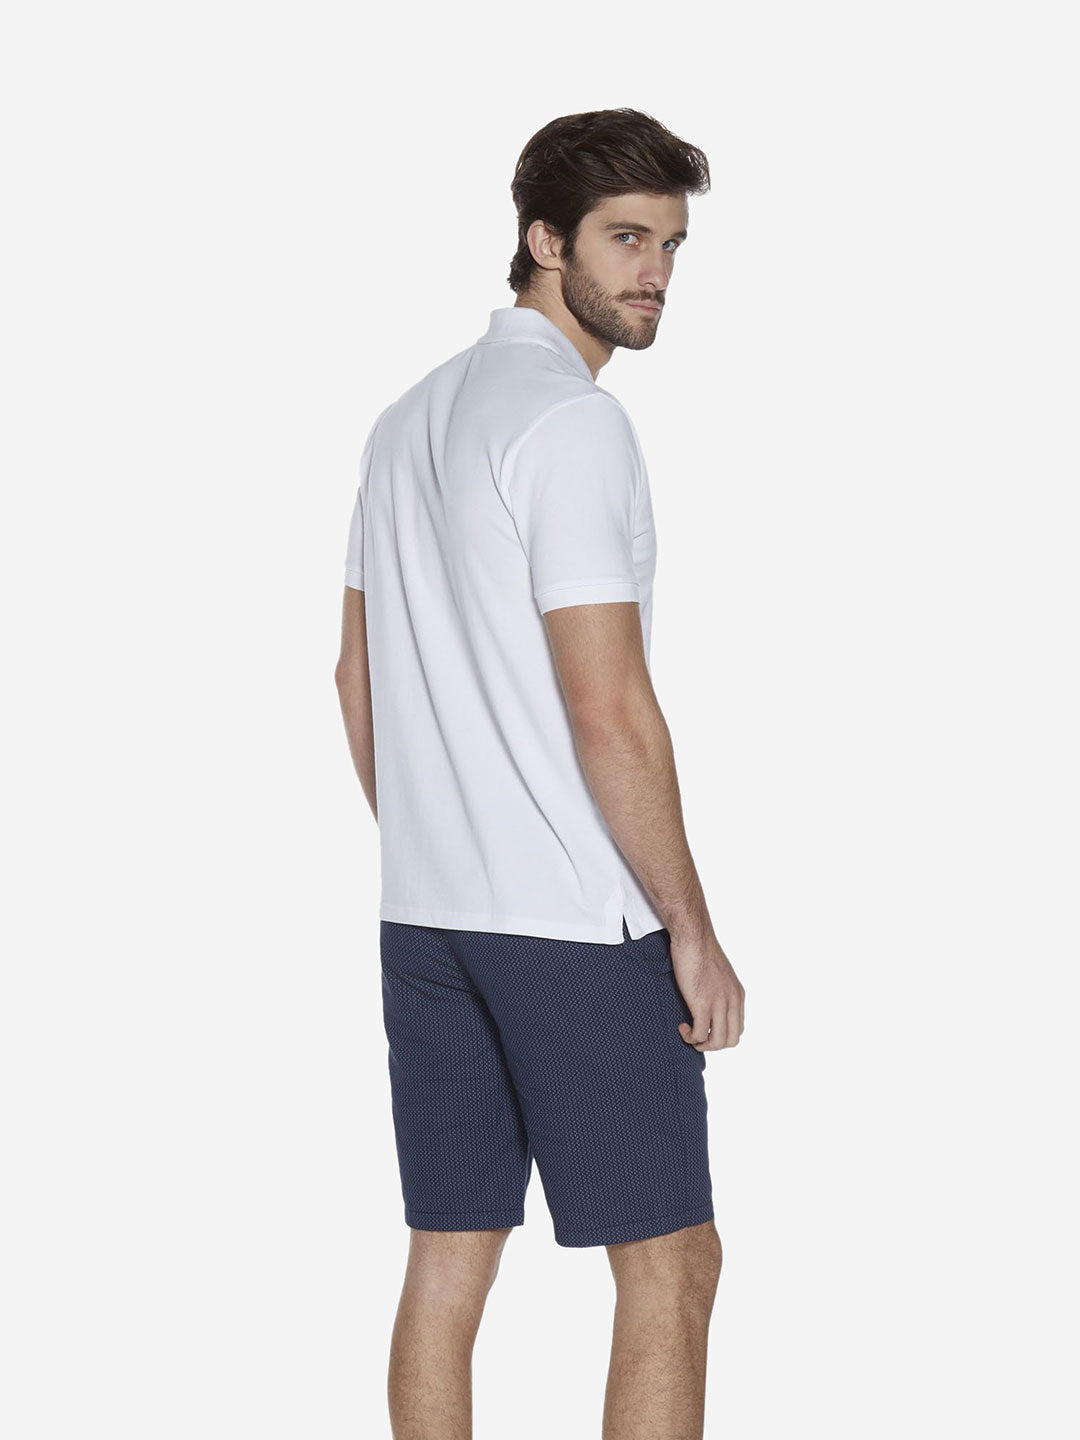 Westsport White Slim Fit Polo T-Shirt | White Slim Fit Polo T-Shirt for Men Back View - Westside